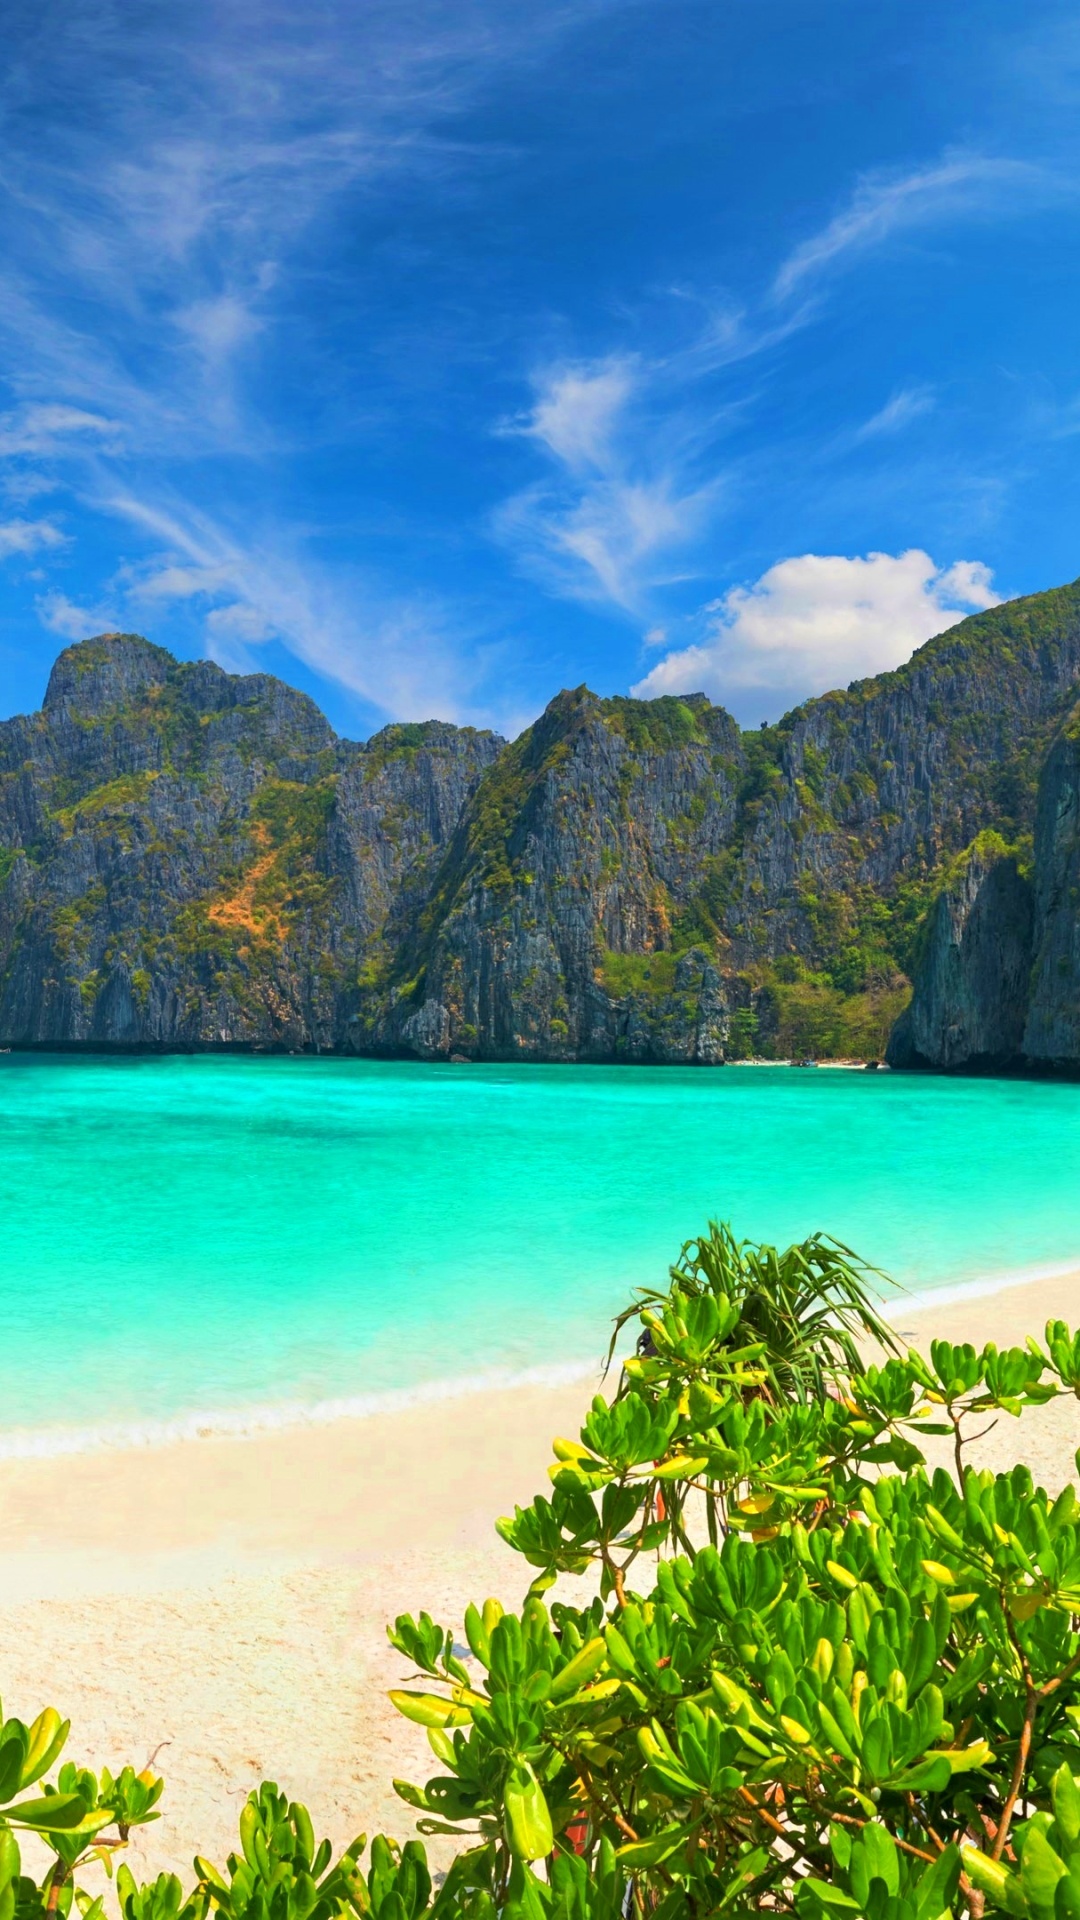 Скачать обои Остров Пхи Пхи на телефон бесплатно